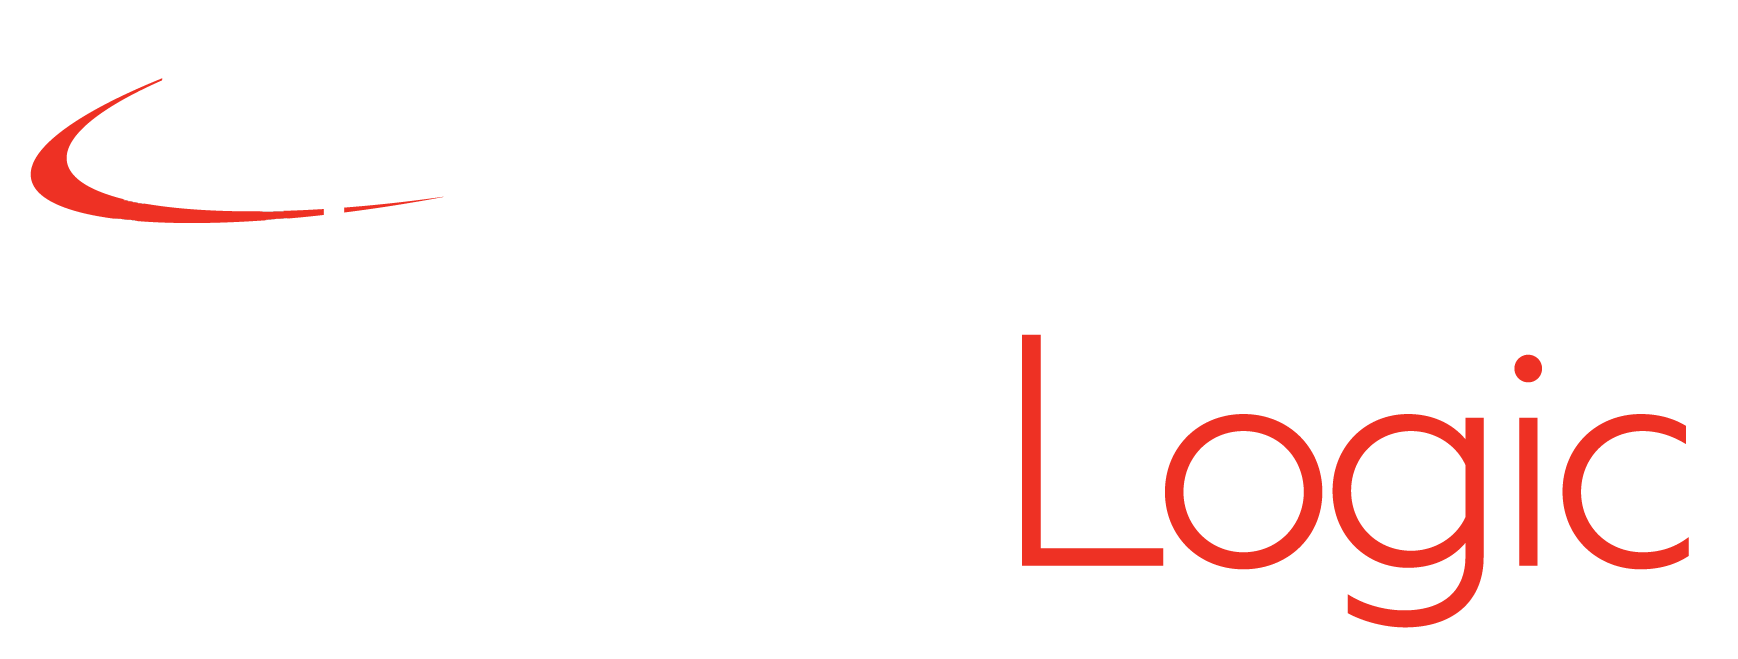 AutomatedLogic_logo4